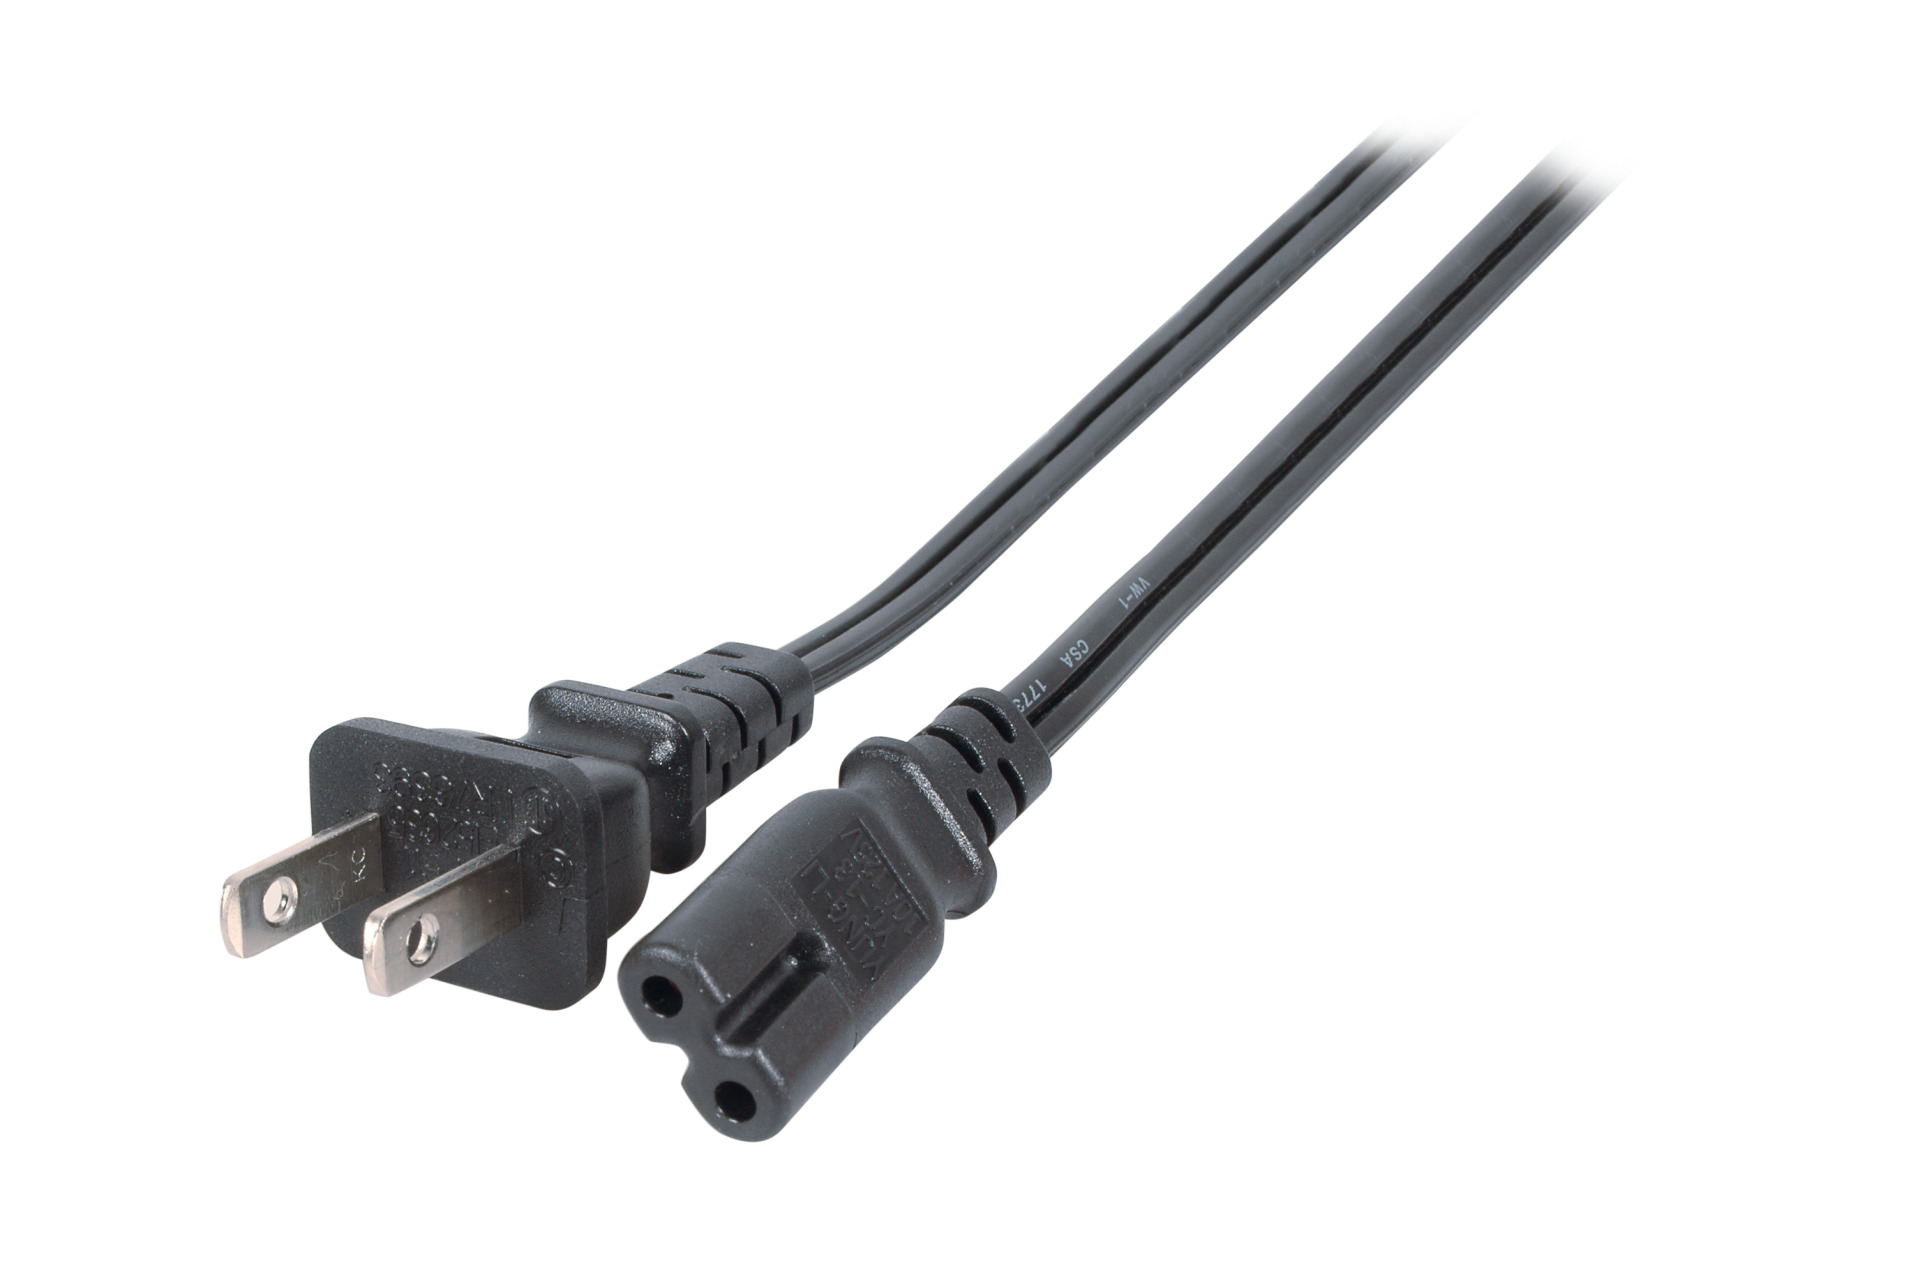 Power Cable USA/NEMA 1-15P - C7 180° (Euro 8), Black, 1.8 m , SPT-2 AWG18 x 2C